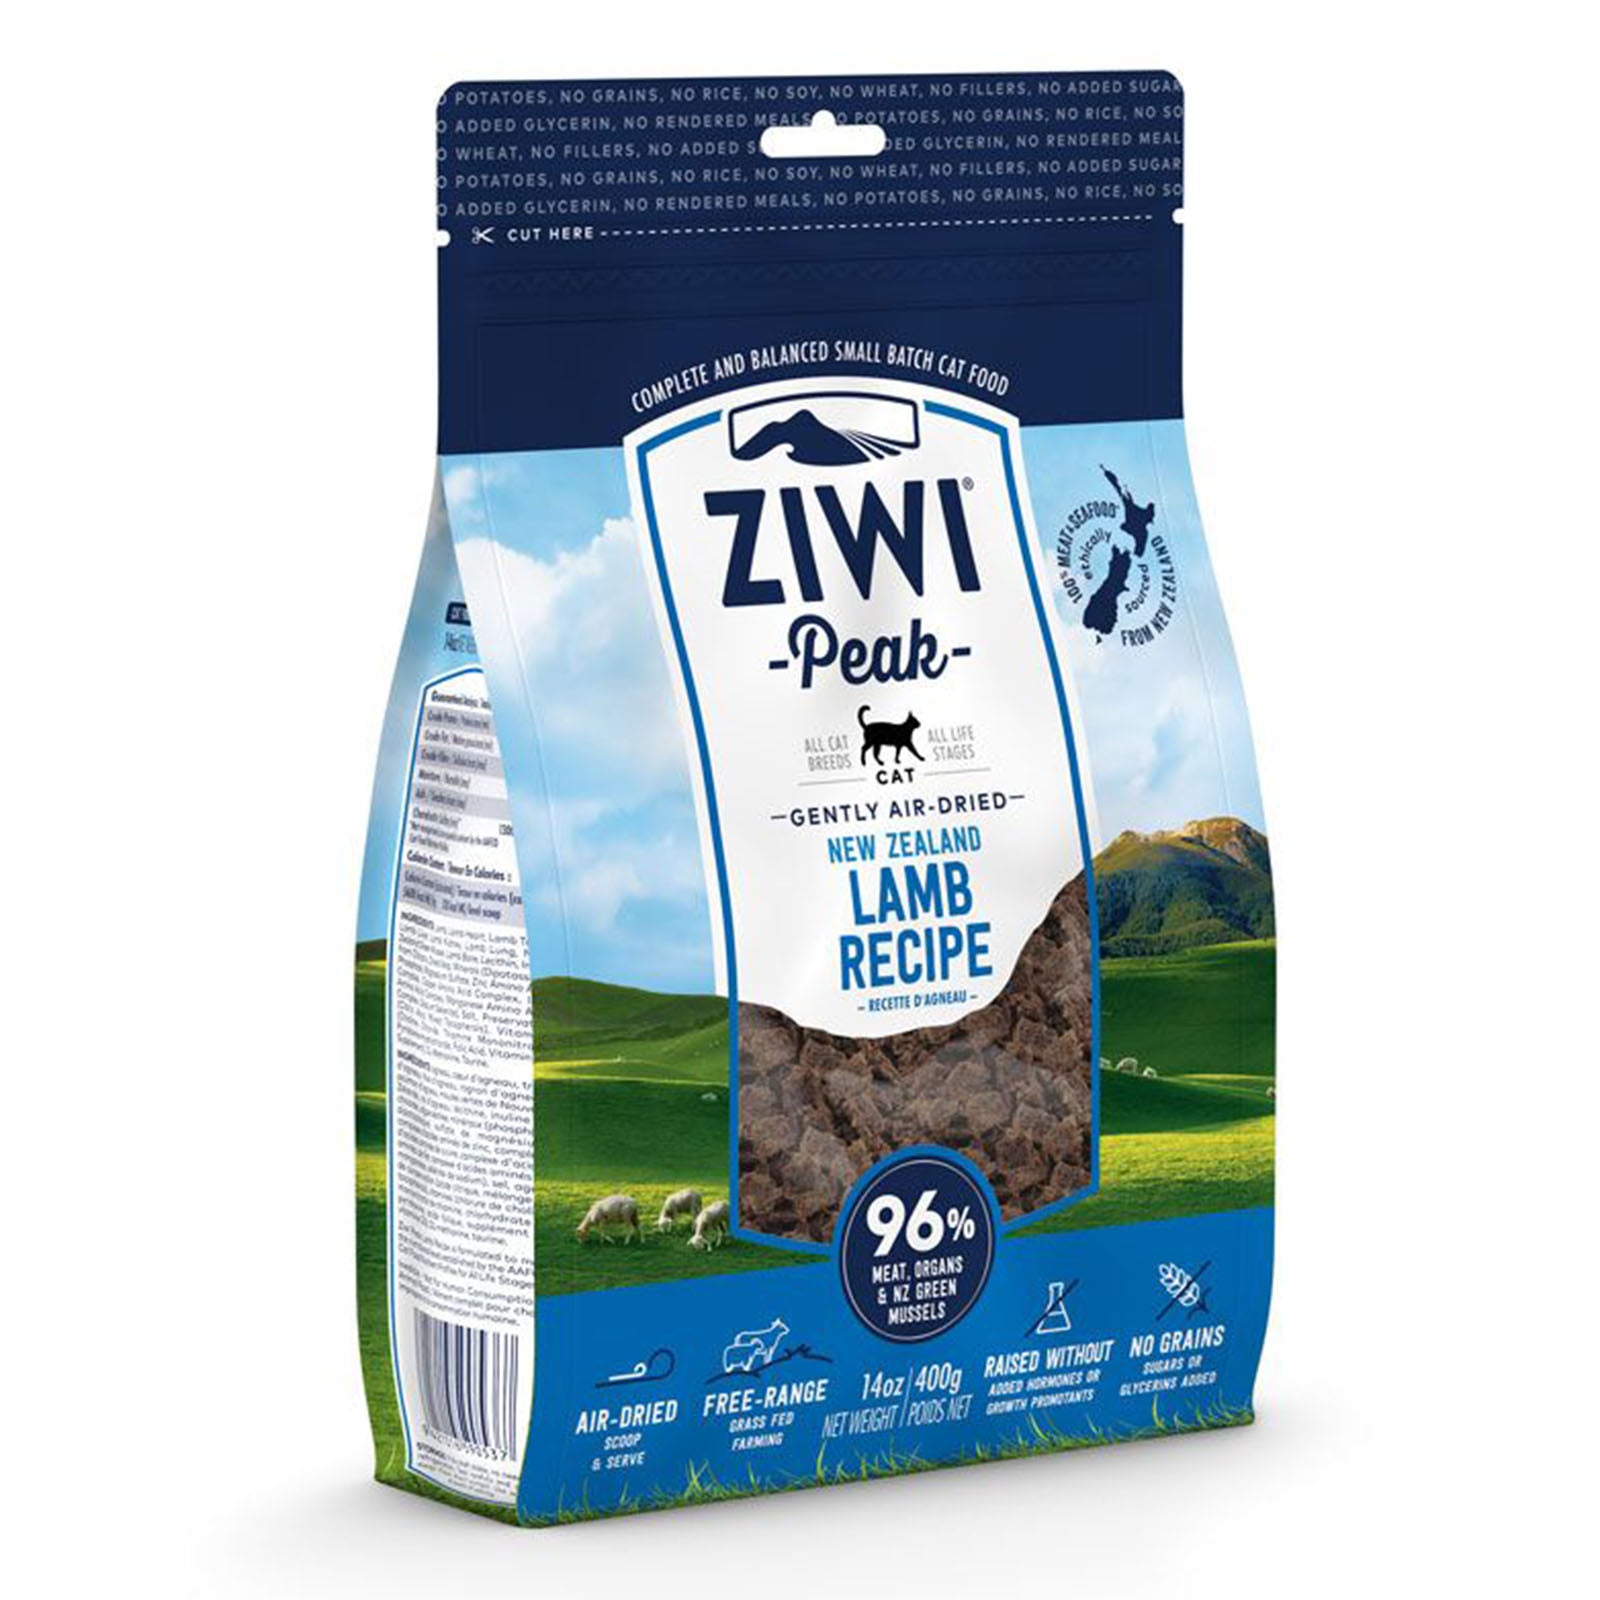 [LAST CHANCE] [CAT] ZIWI PEAK - Air Dried Lamb